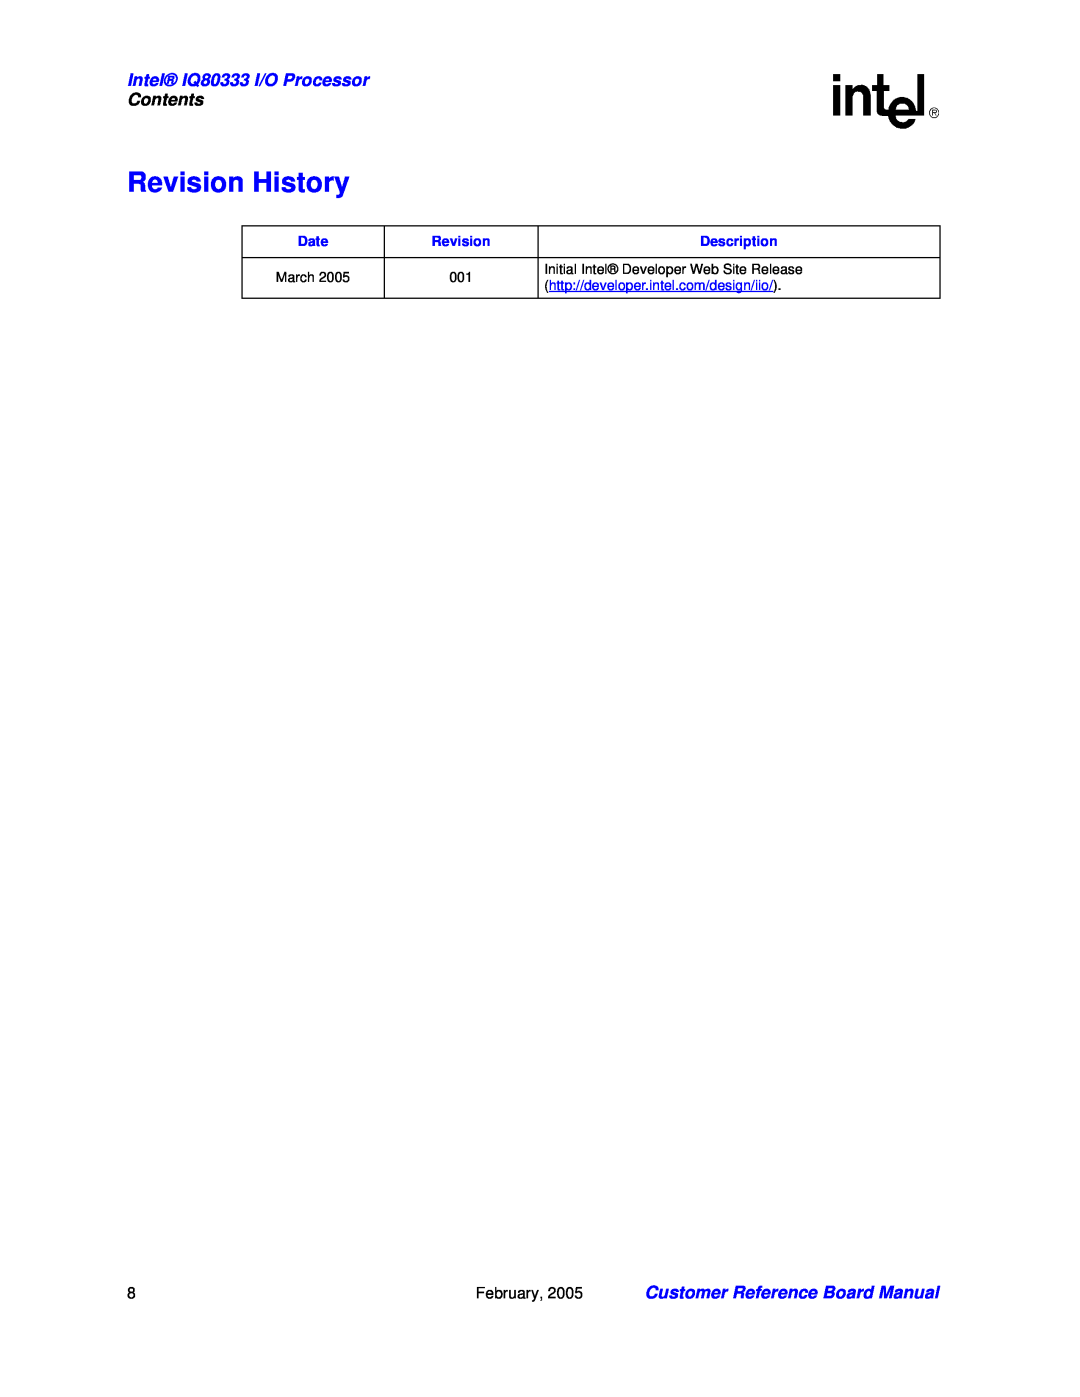 Intel manual Revision History, Intel IQ80333 I/O Processor, Contents, Customer Reference Board Manual, Date, Description 